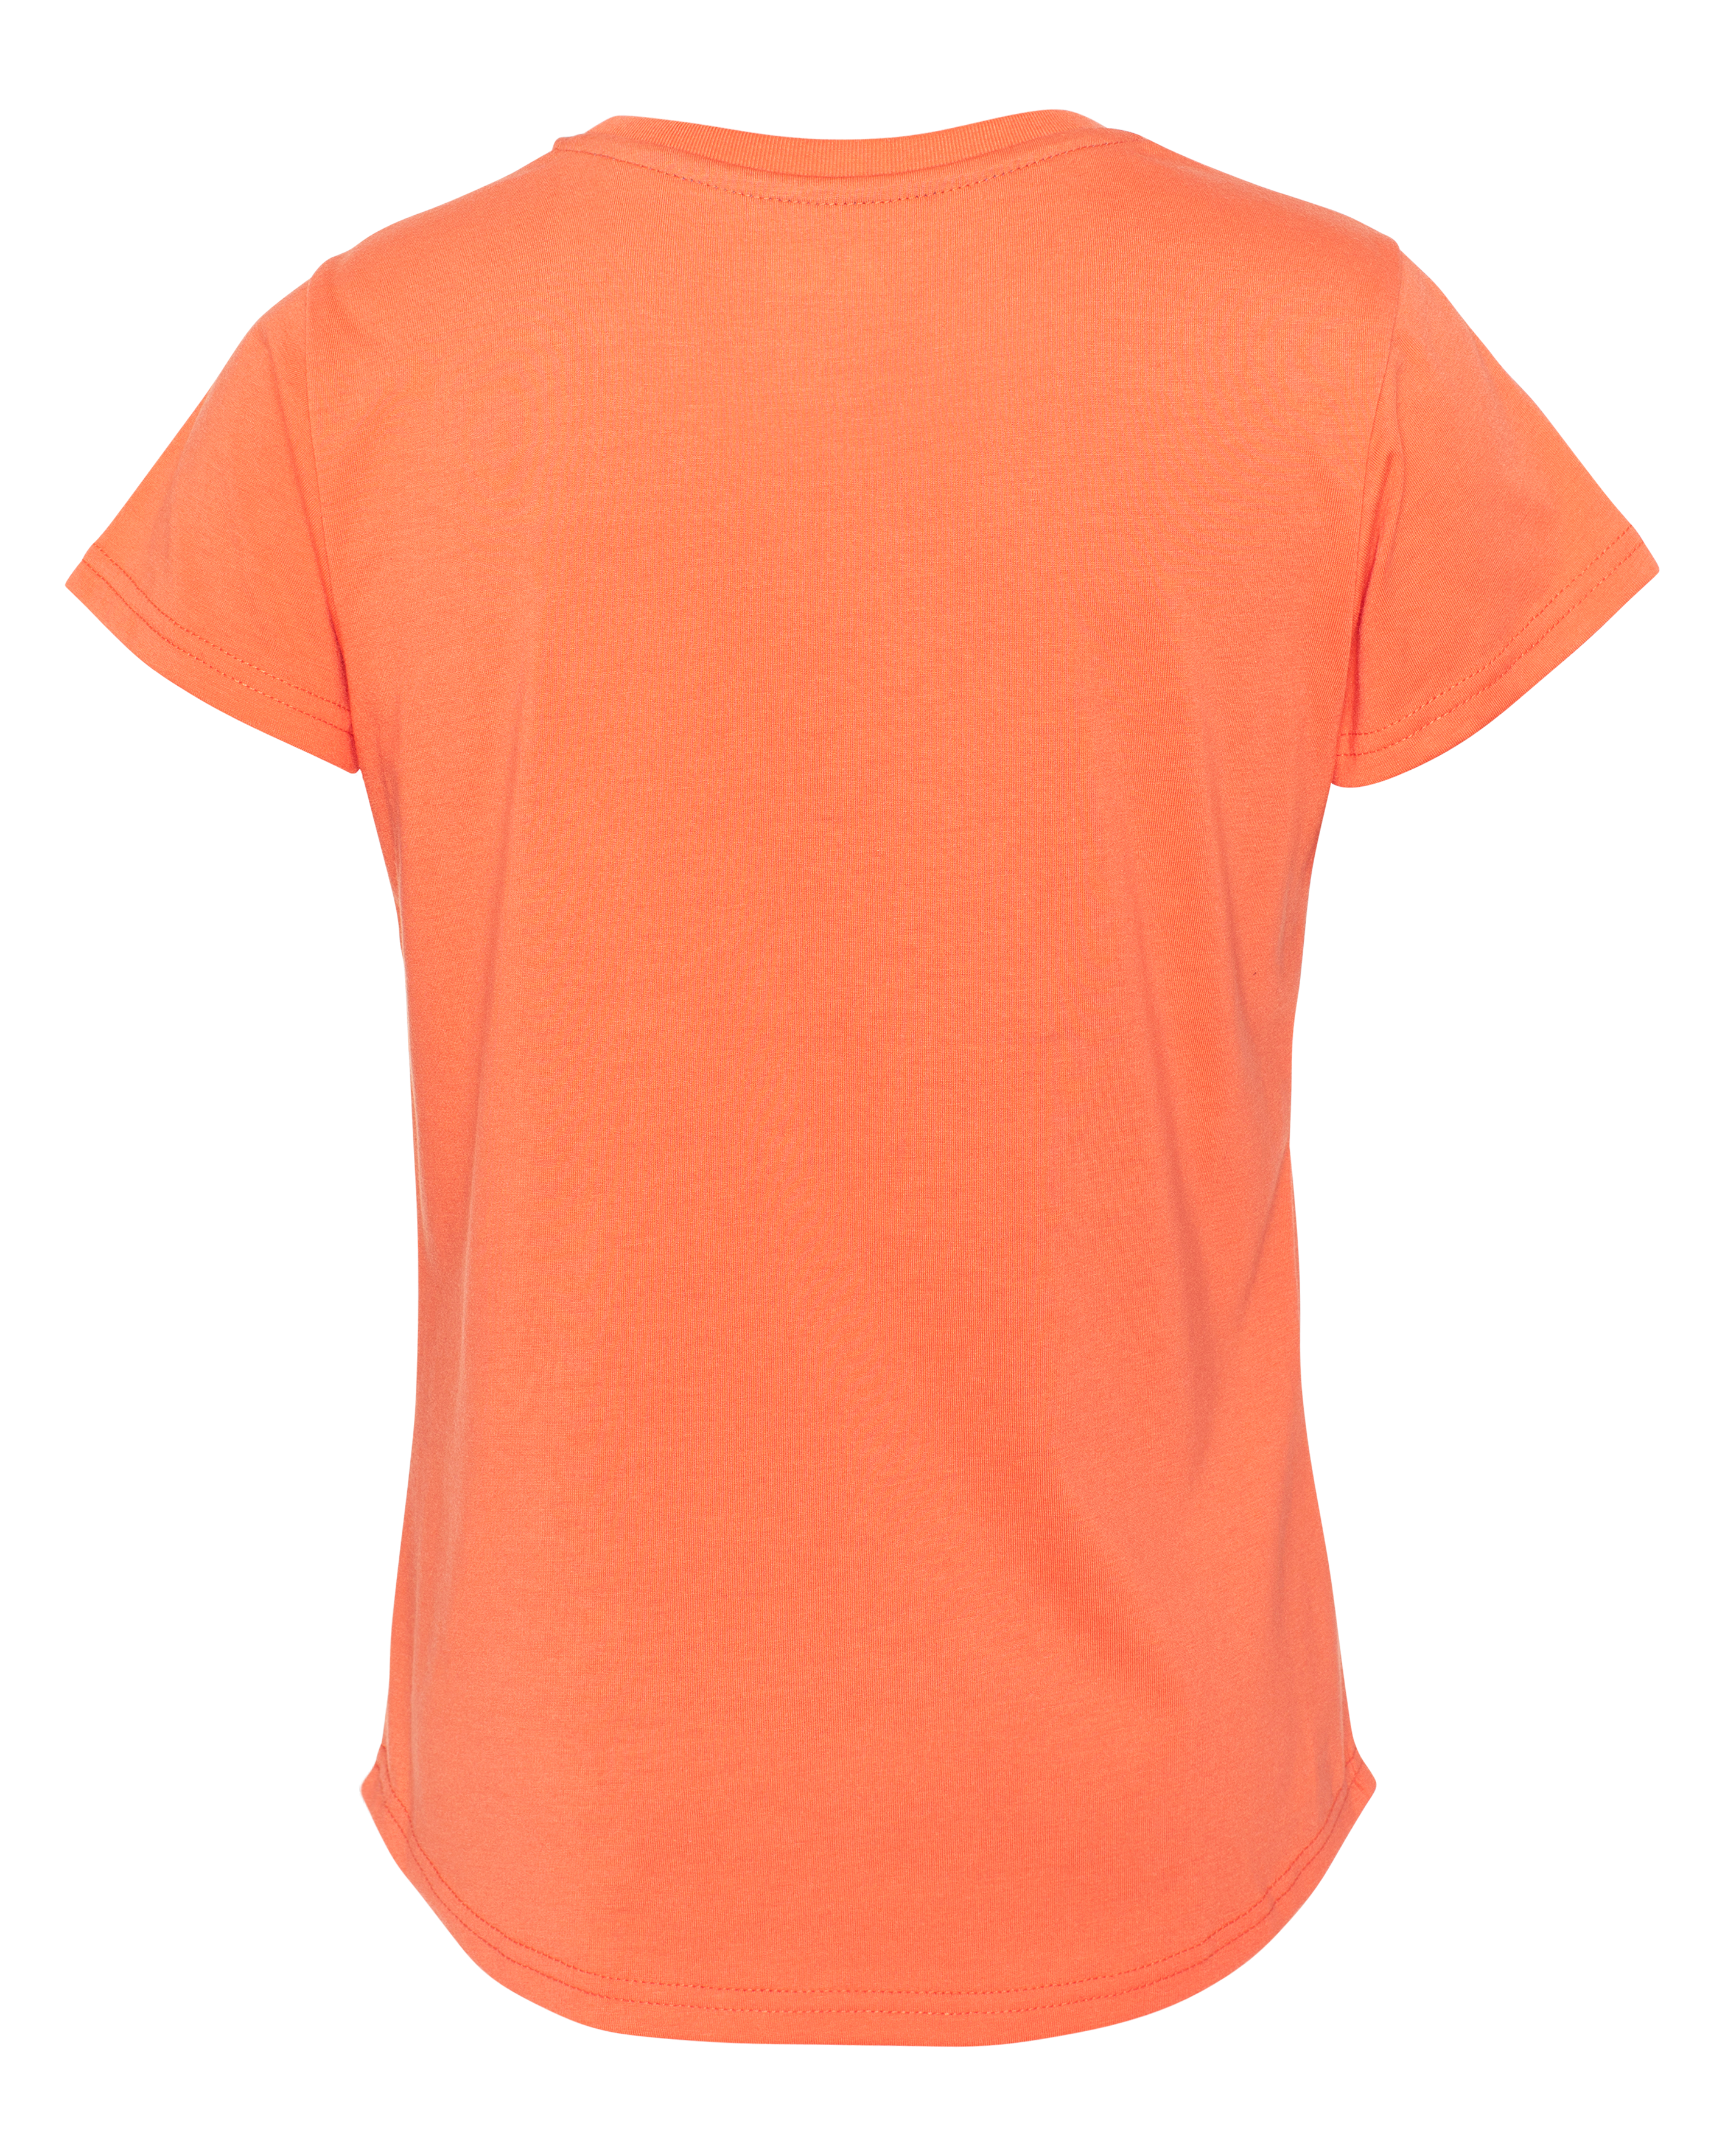 T-Shirt - Girl's Orange Rainbow Print - Kids